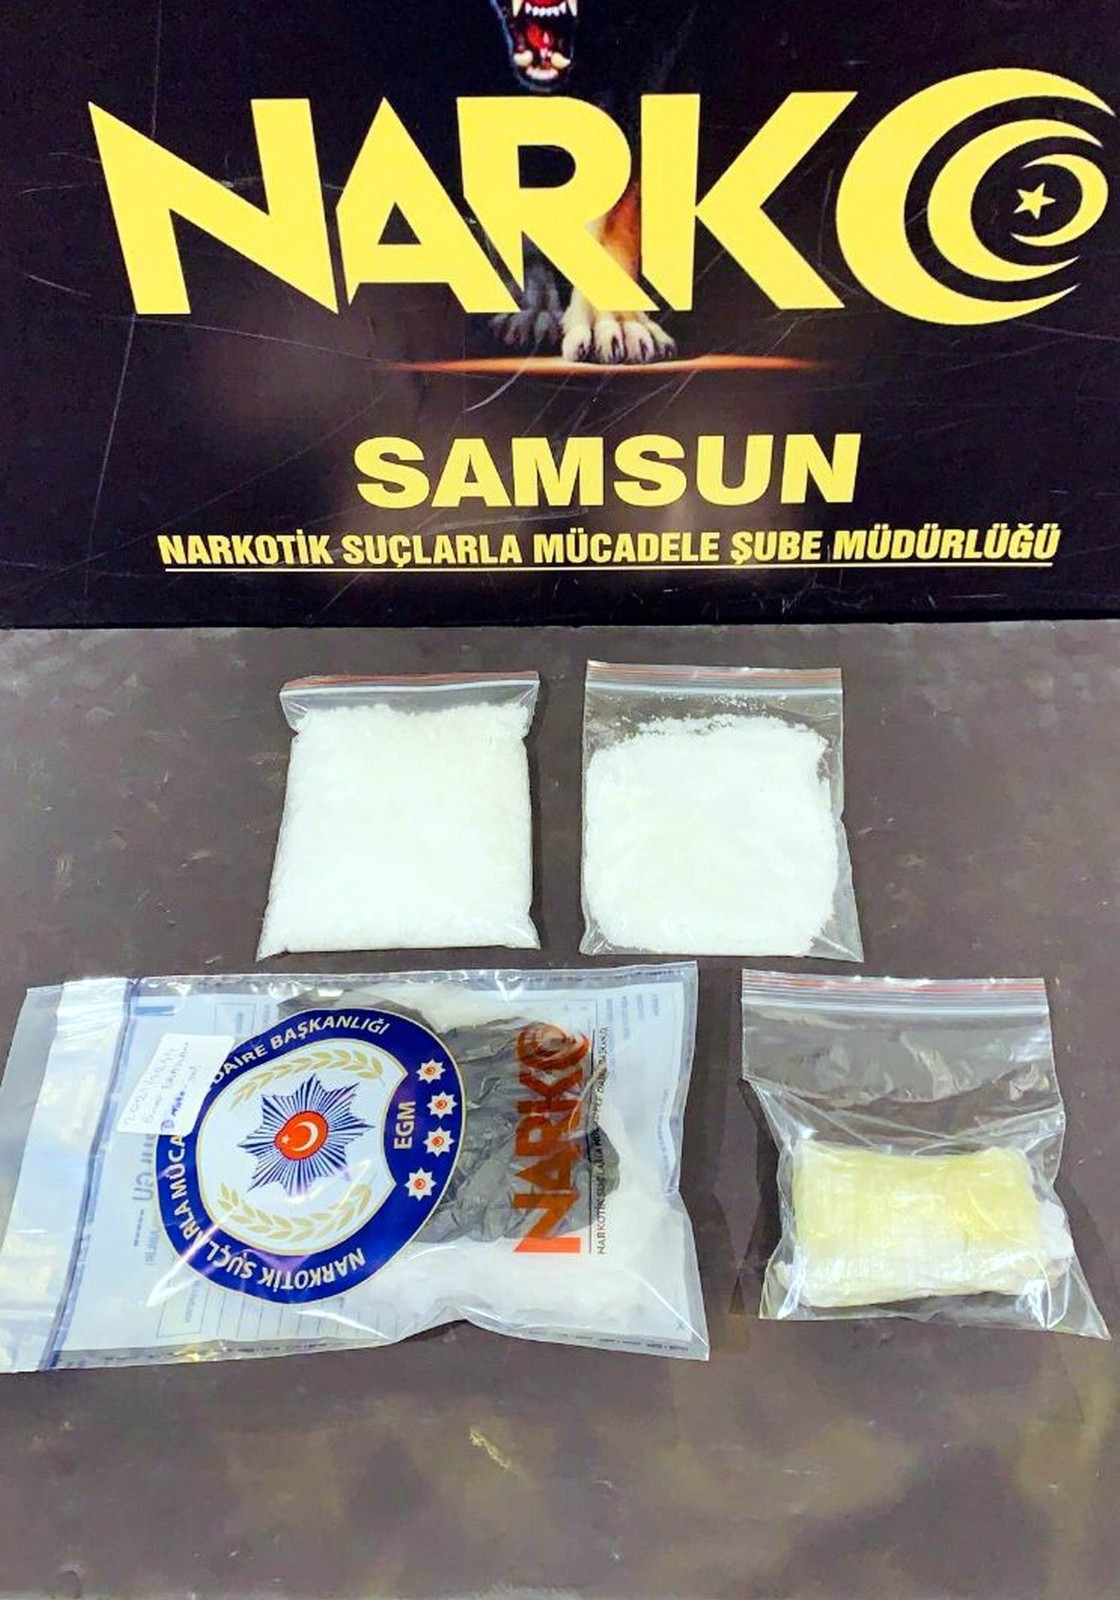 Samsun’da bir kişi 303 gram metamfetamin ile yakalandı